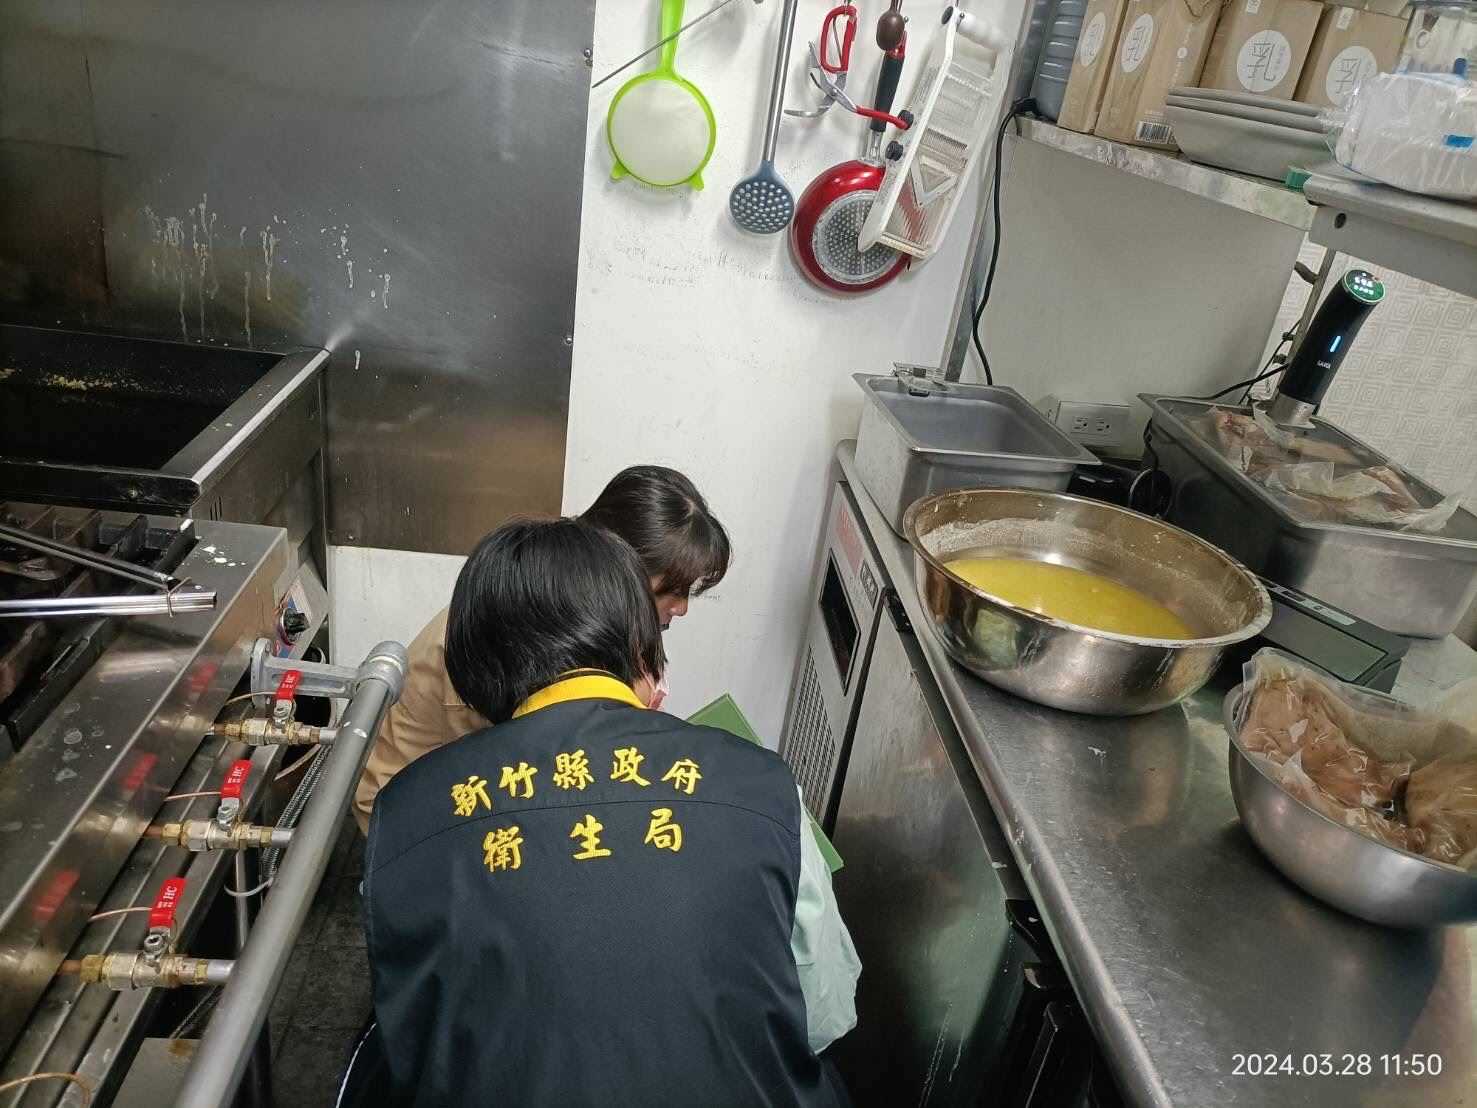 竹縣衛生局抽檢民眾反映的「問題餐點」食材，結果約2周會出爐。圖/取自新竹縣政府衛生局網站